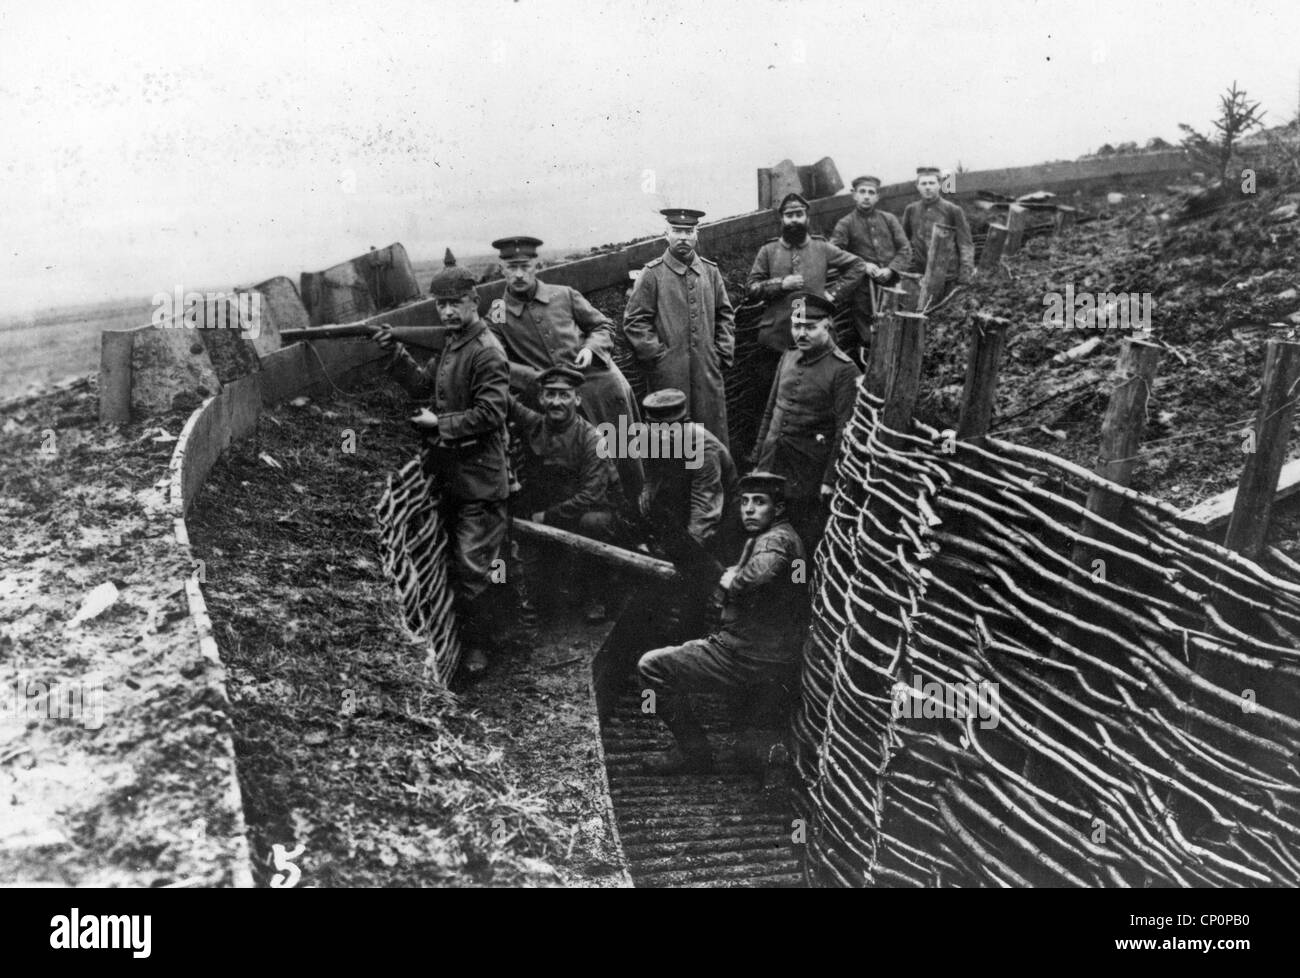 Les soldats de l'armée allemande dans une tranchée pendant la Première Guerre mondiale Banque D'Images